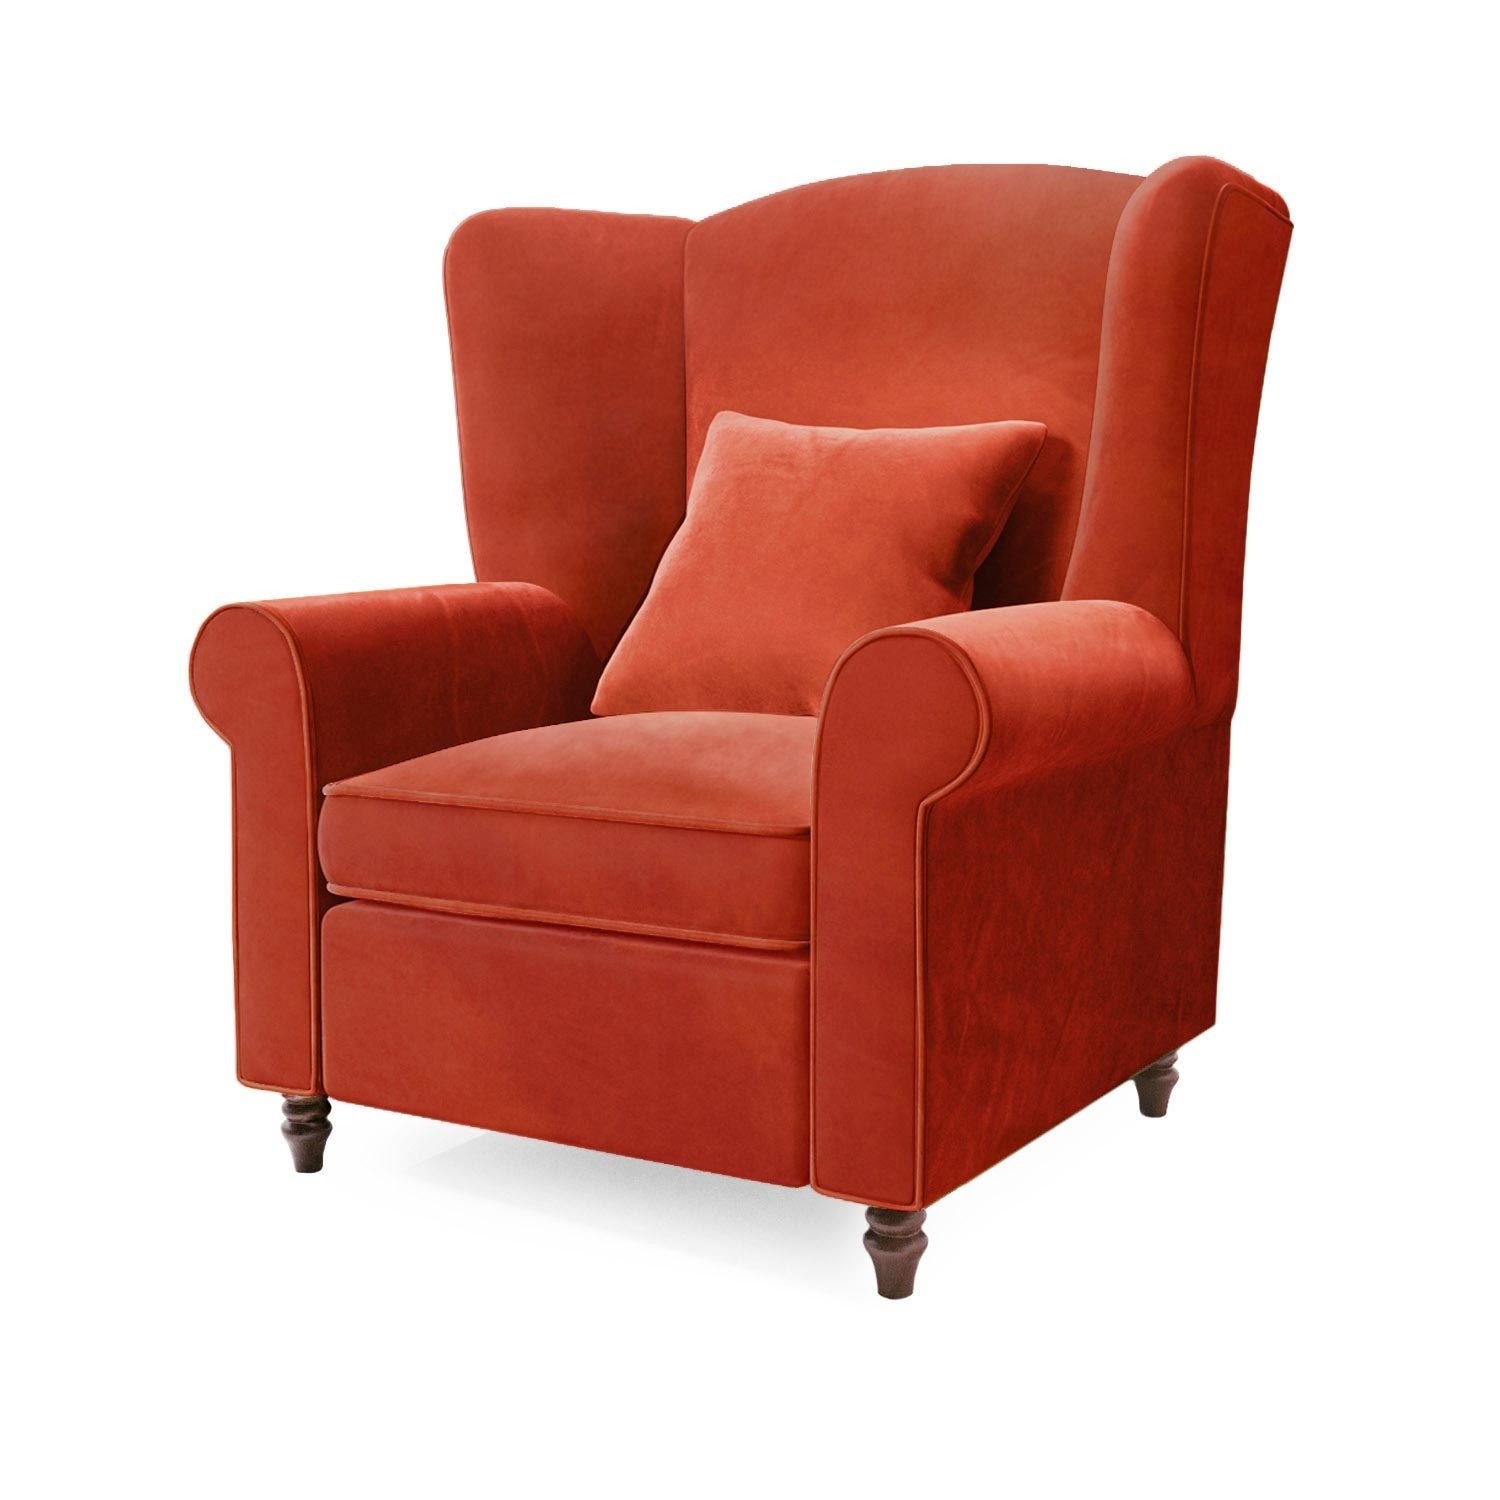 Read more about Burnt orange velvet wingback armchair rupert